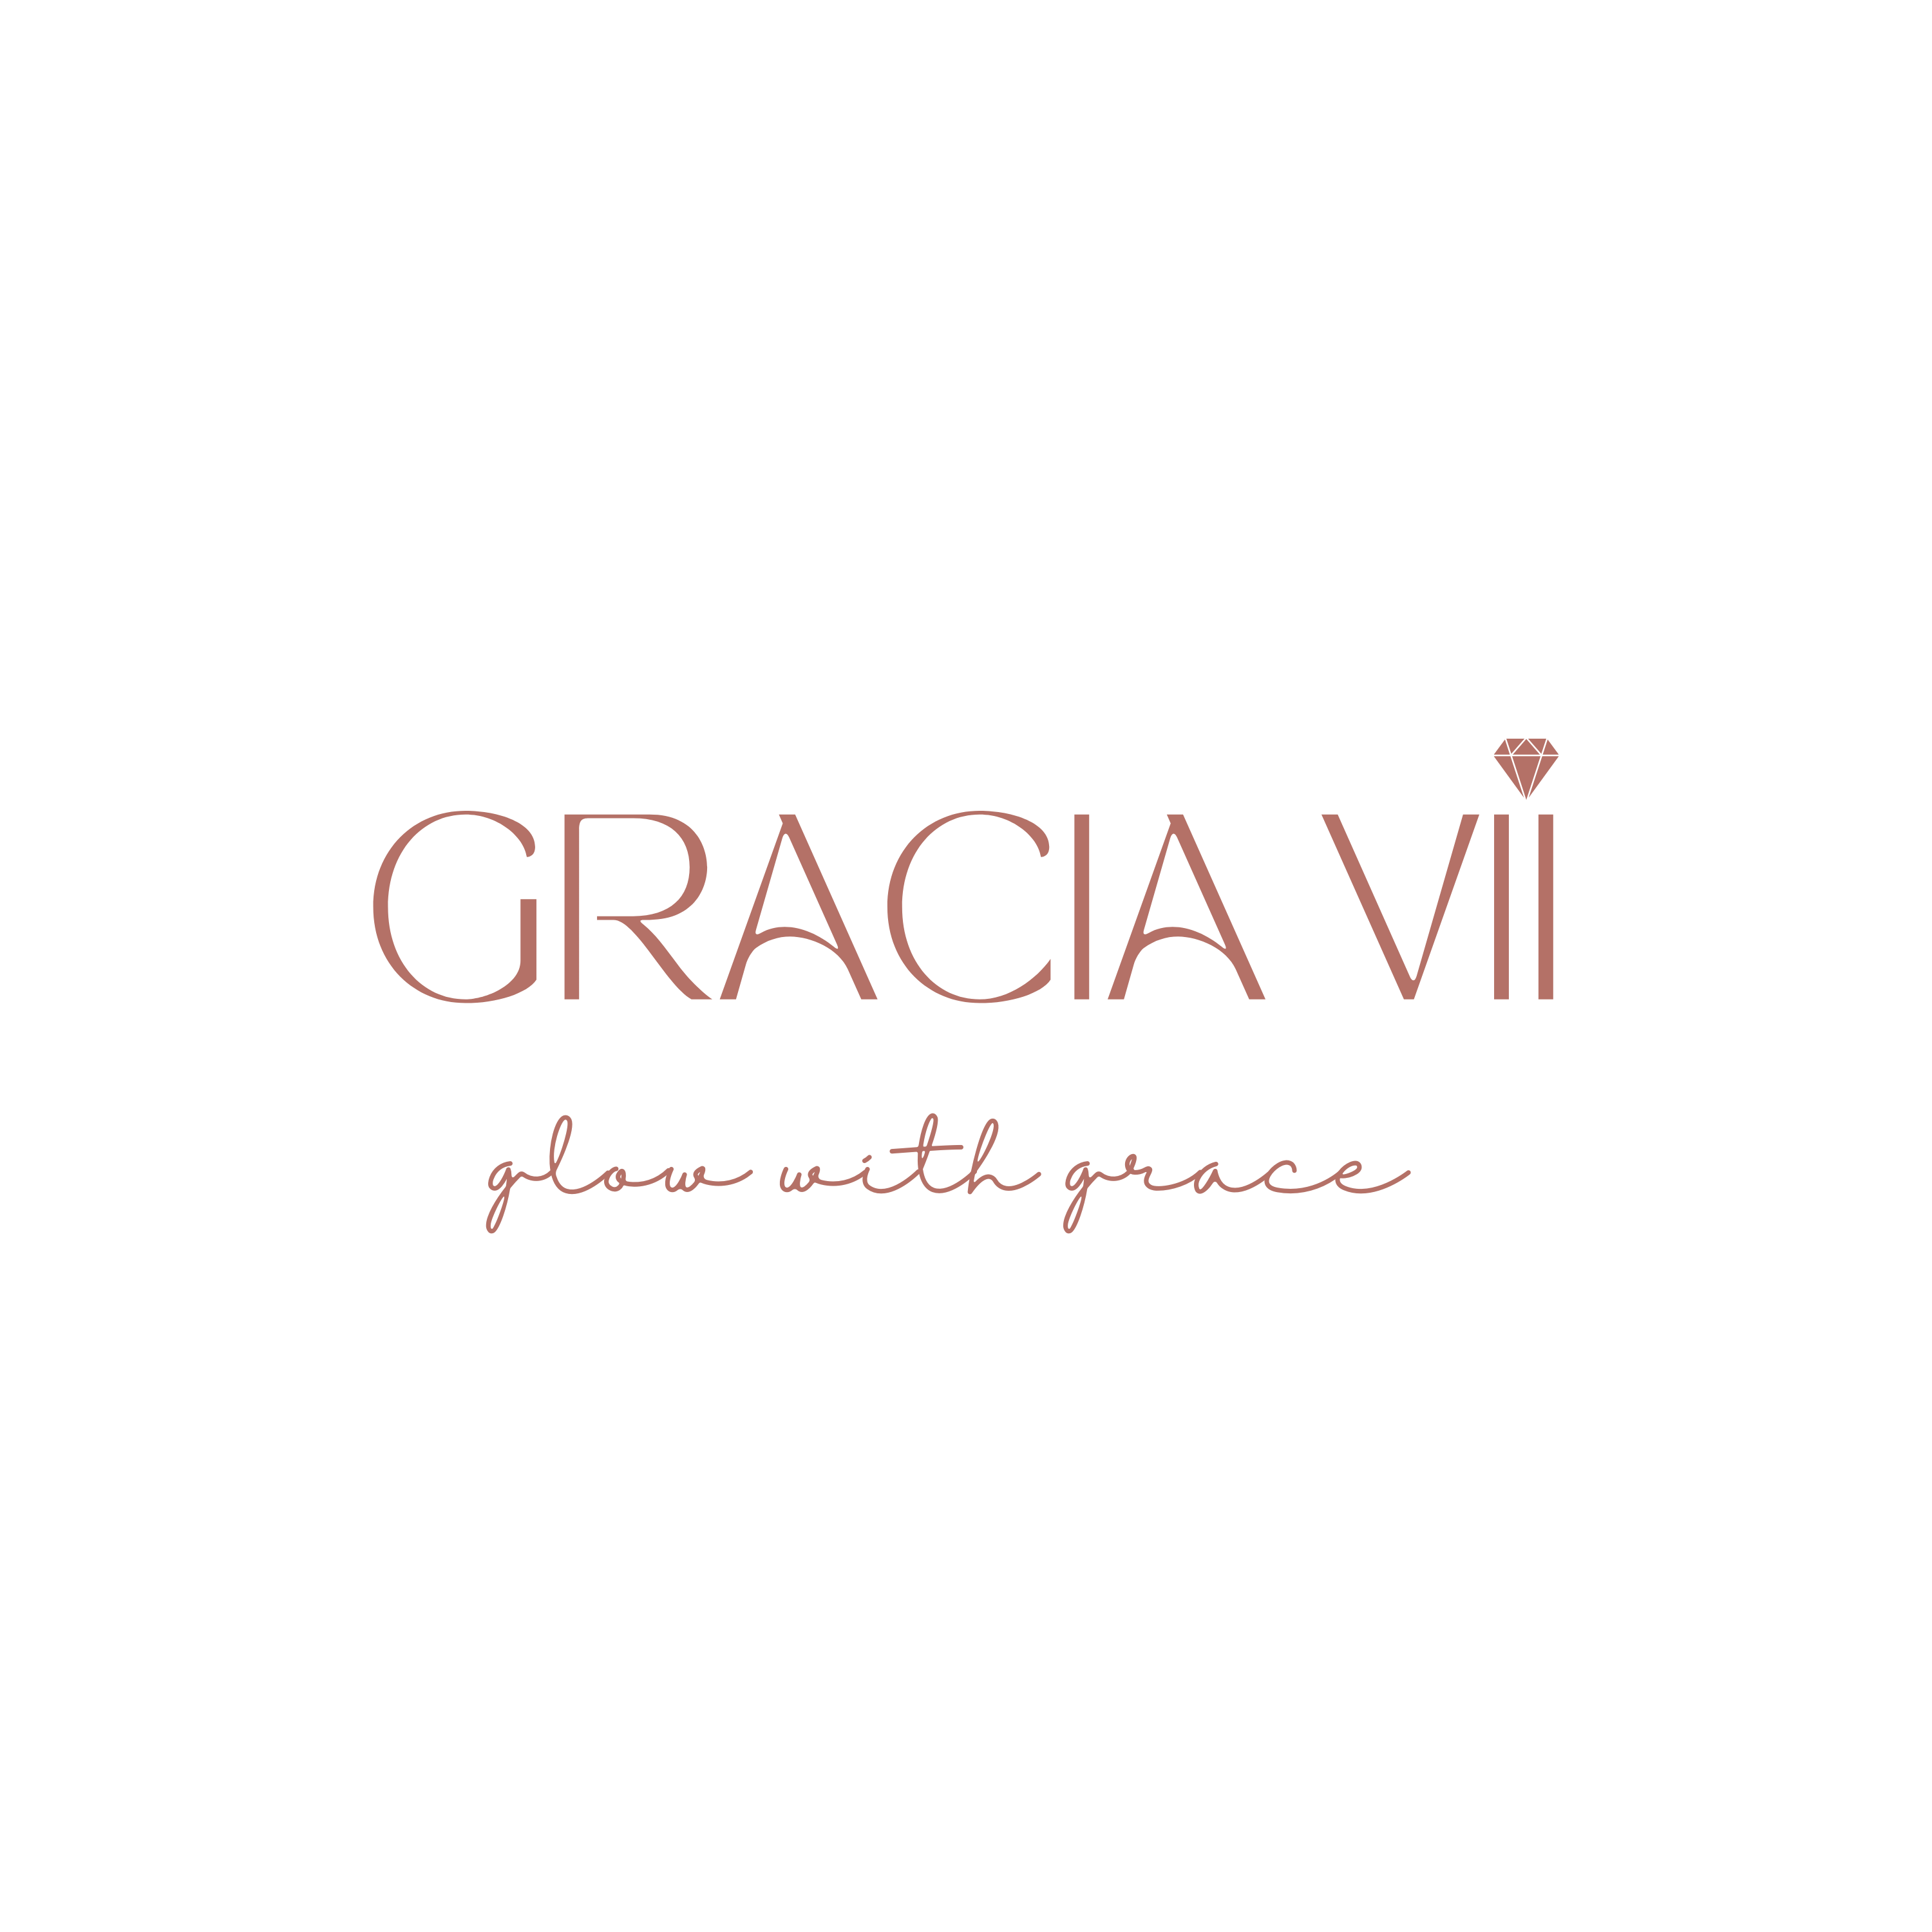 Gracia VII